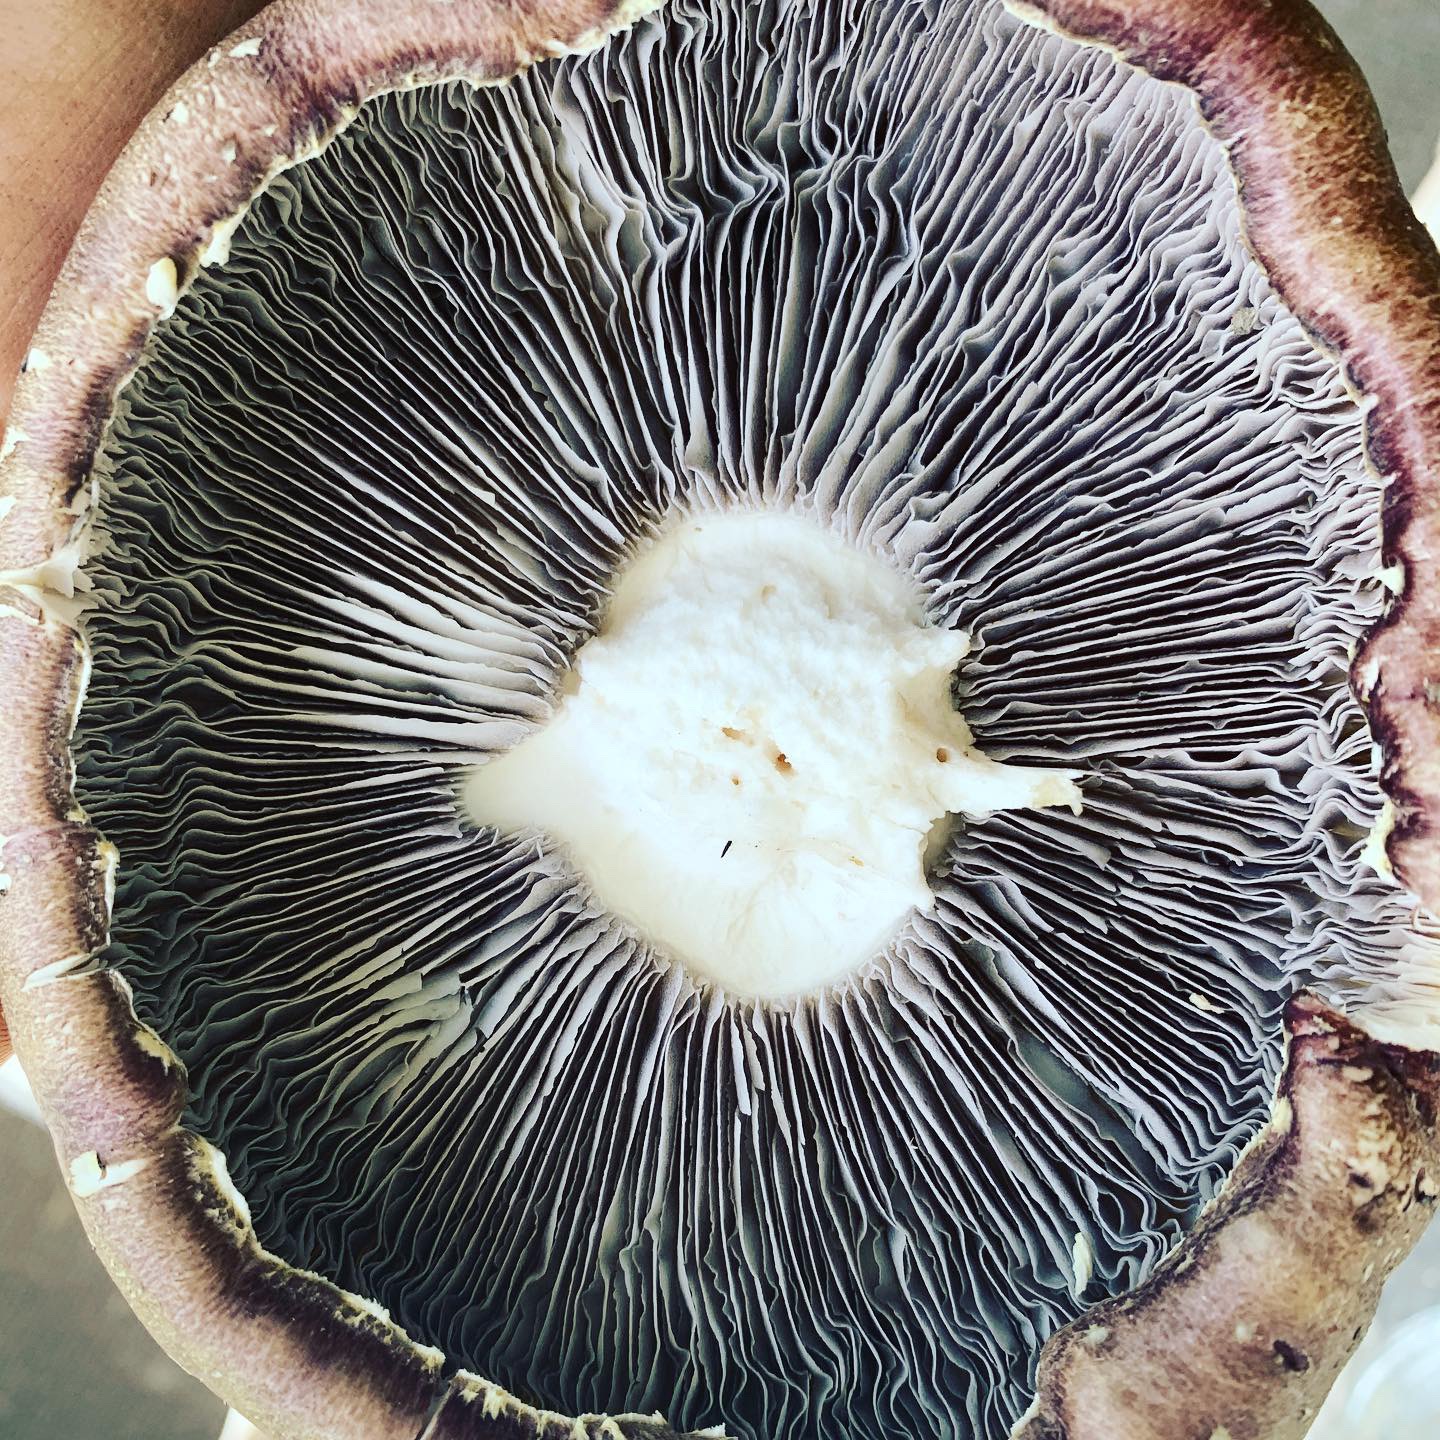 Wine cap mushroom